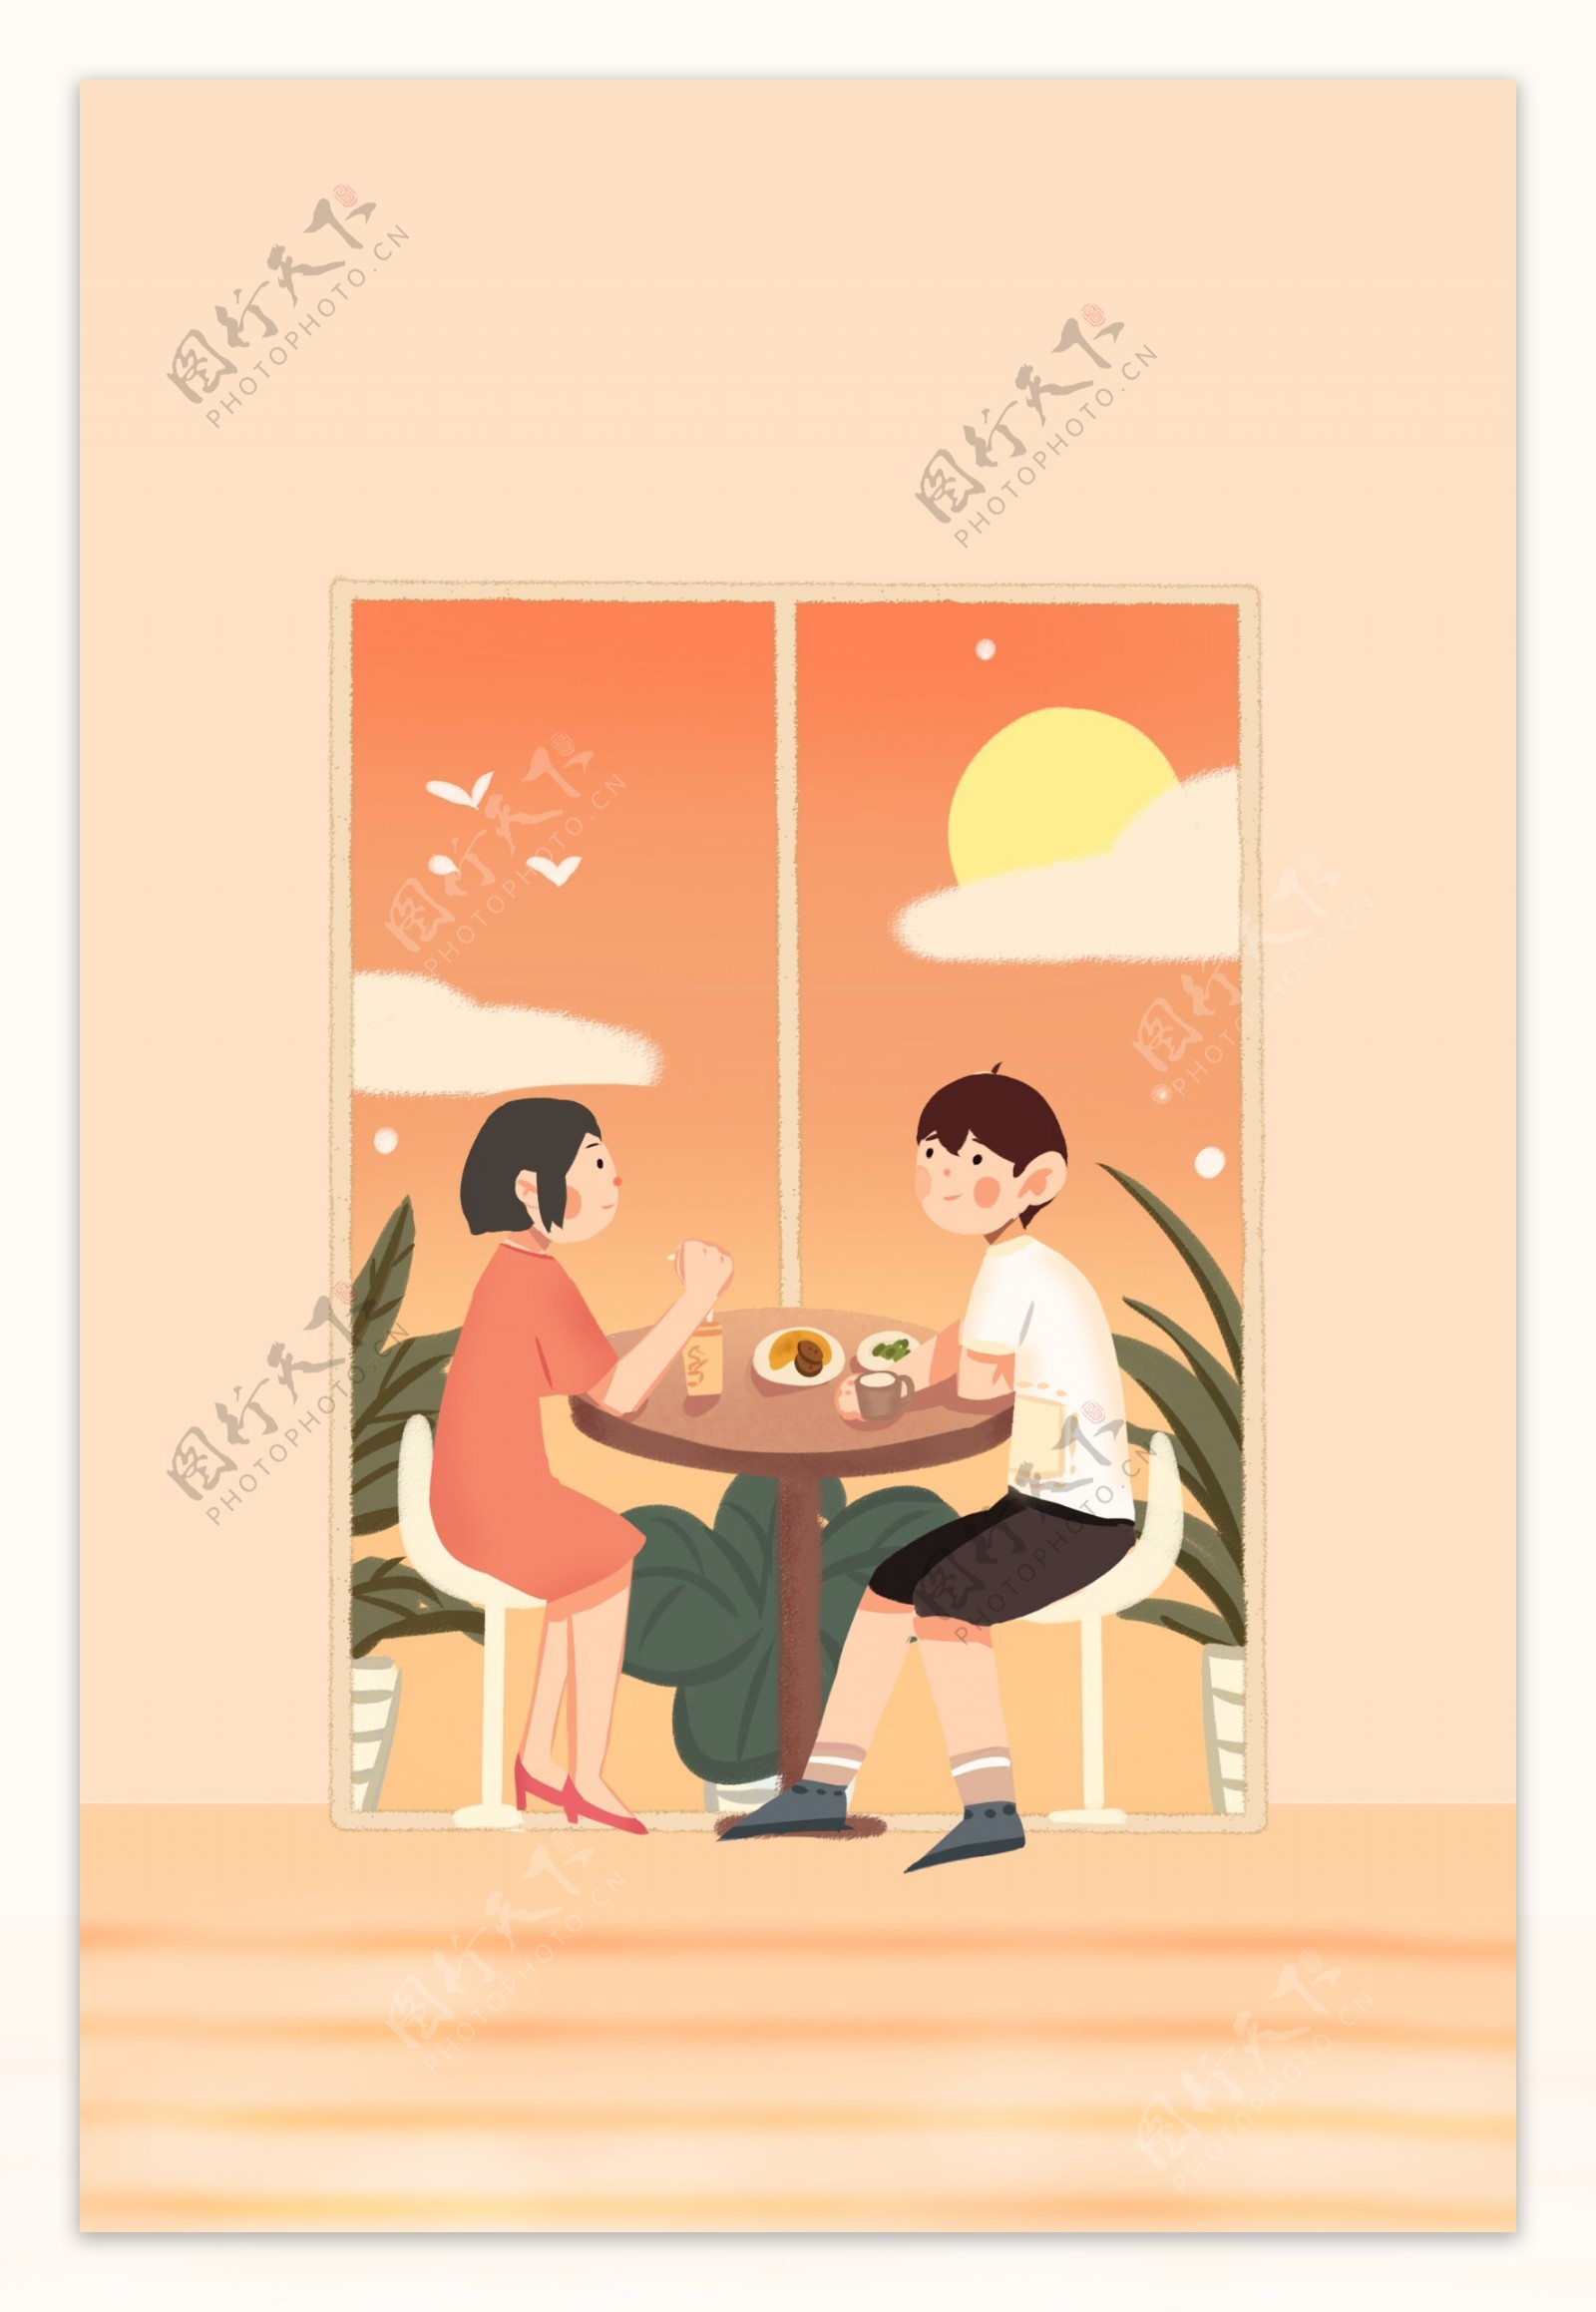 新年国外度假情侣约会插画风海报